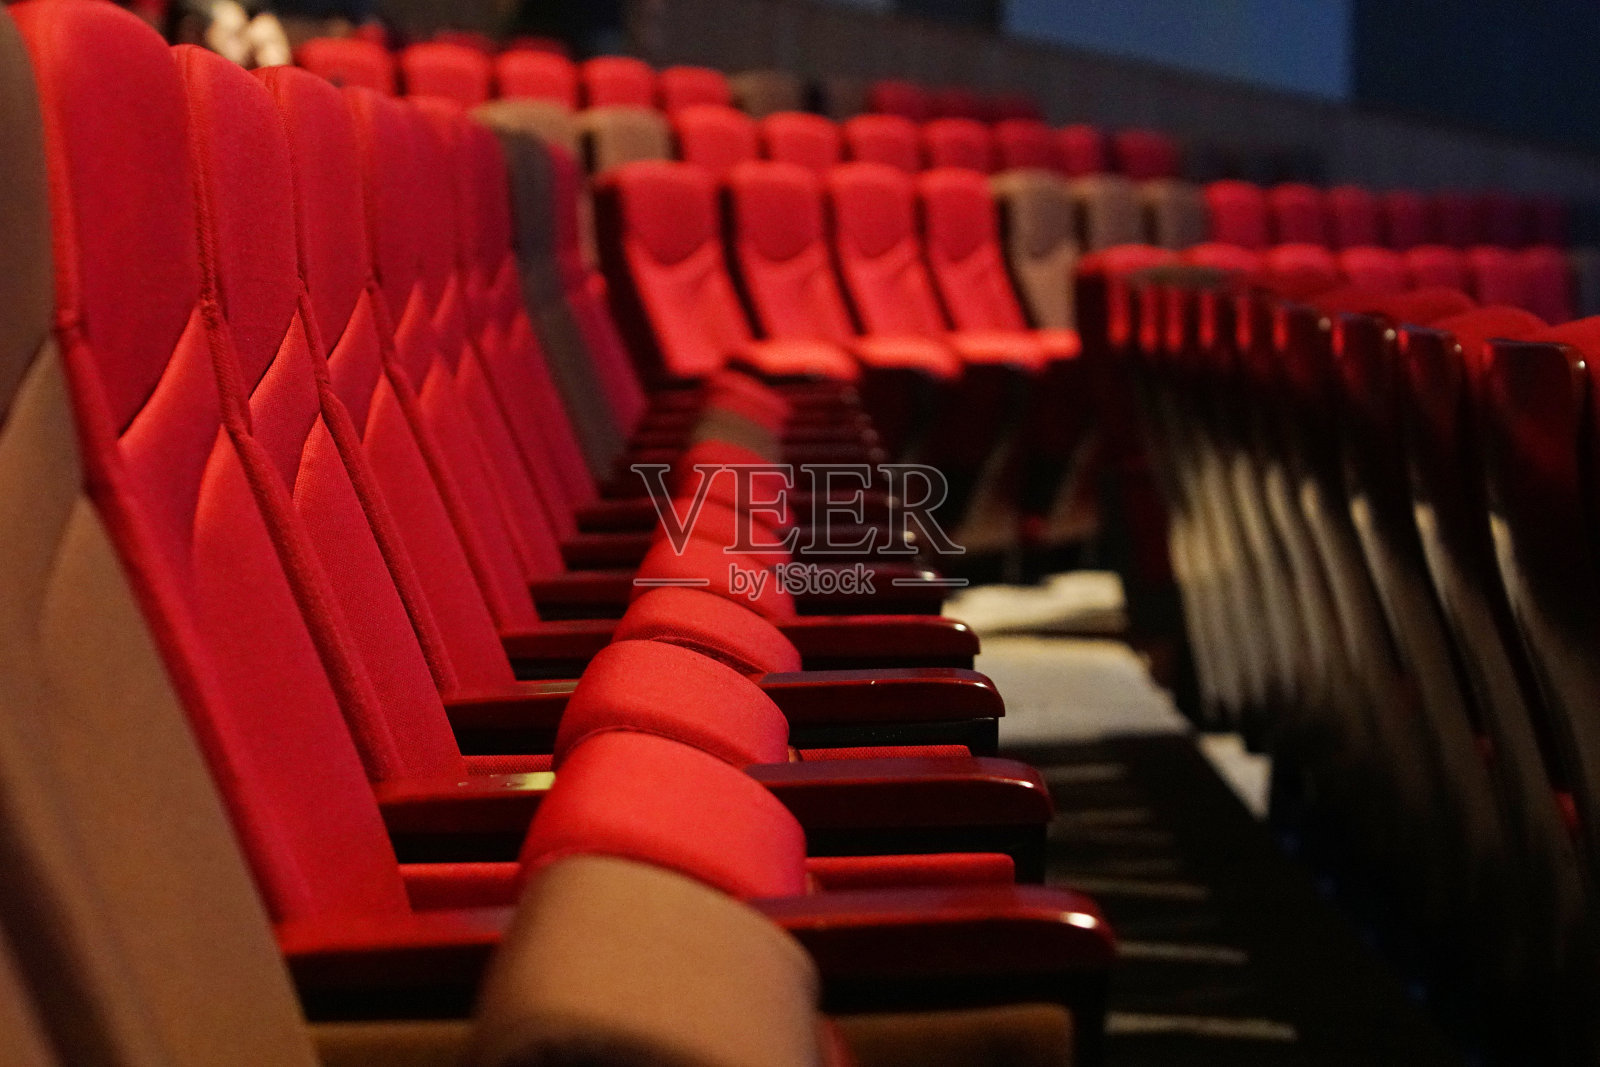 红色天鹅绒织物布空许多座位排照片摄影图片